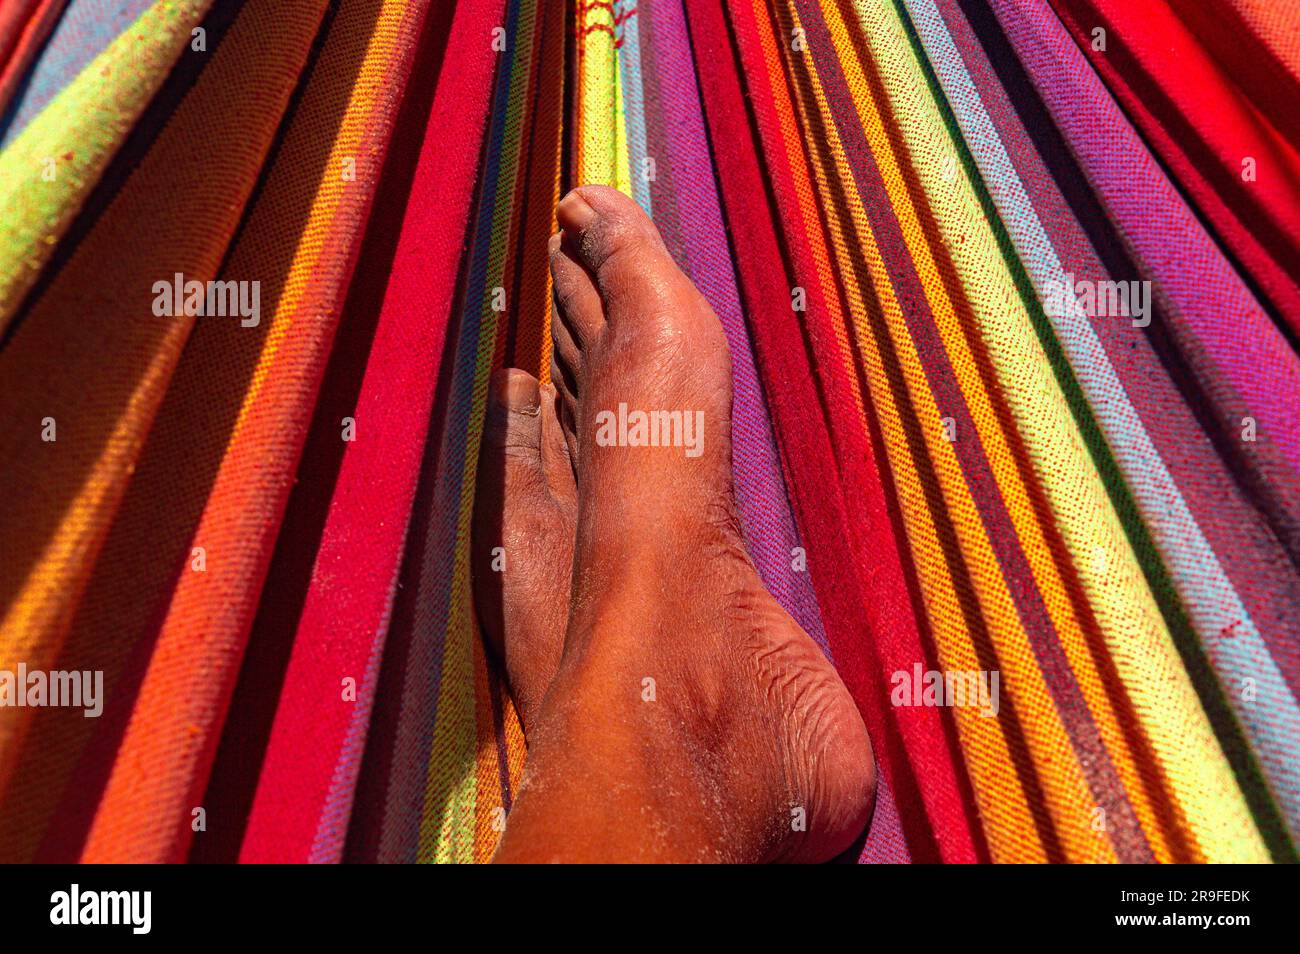 Eine Nahaufnahme, die sich auf die Füße einer farbenfrohen Person konzentriert, die sich gemütlich in einer lebendigen und auffälligen Hängematte ruht. Stockfoto